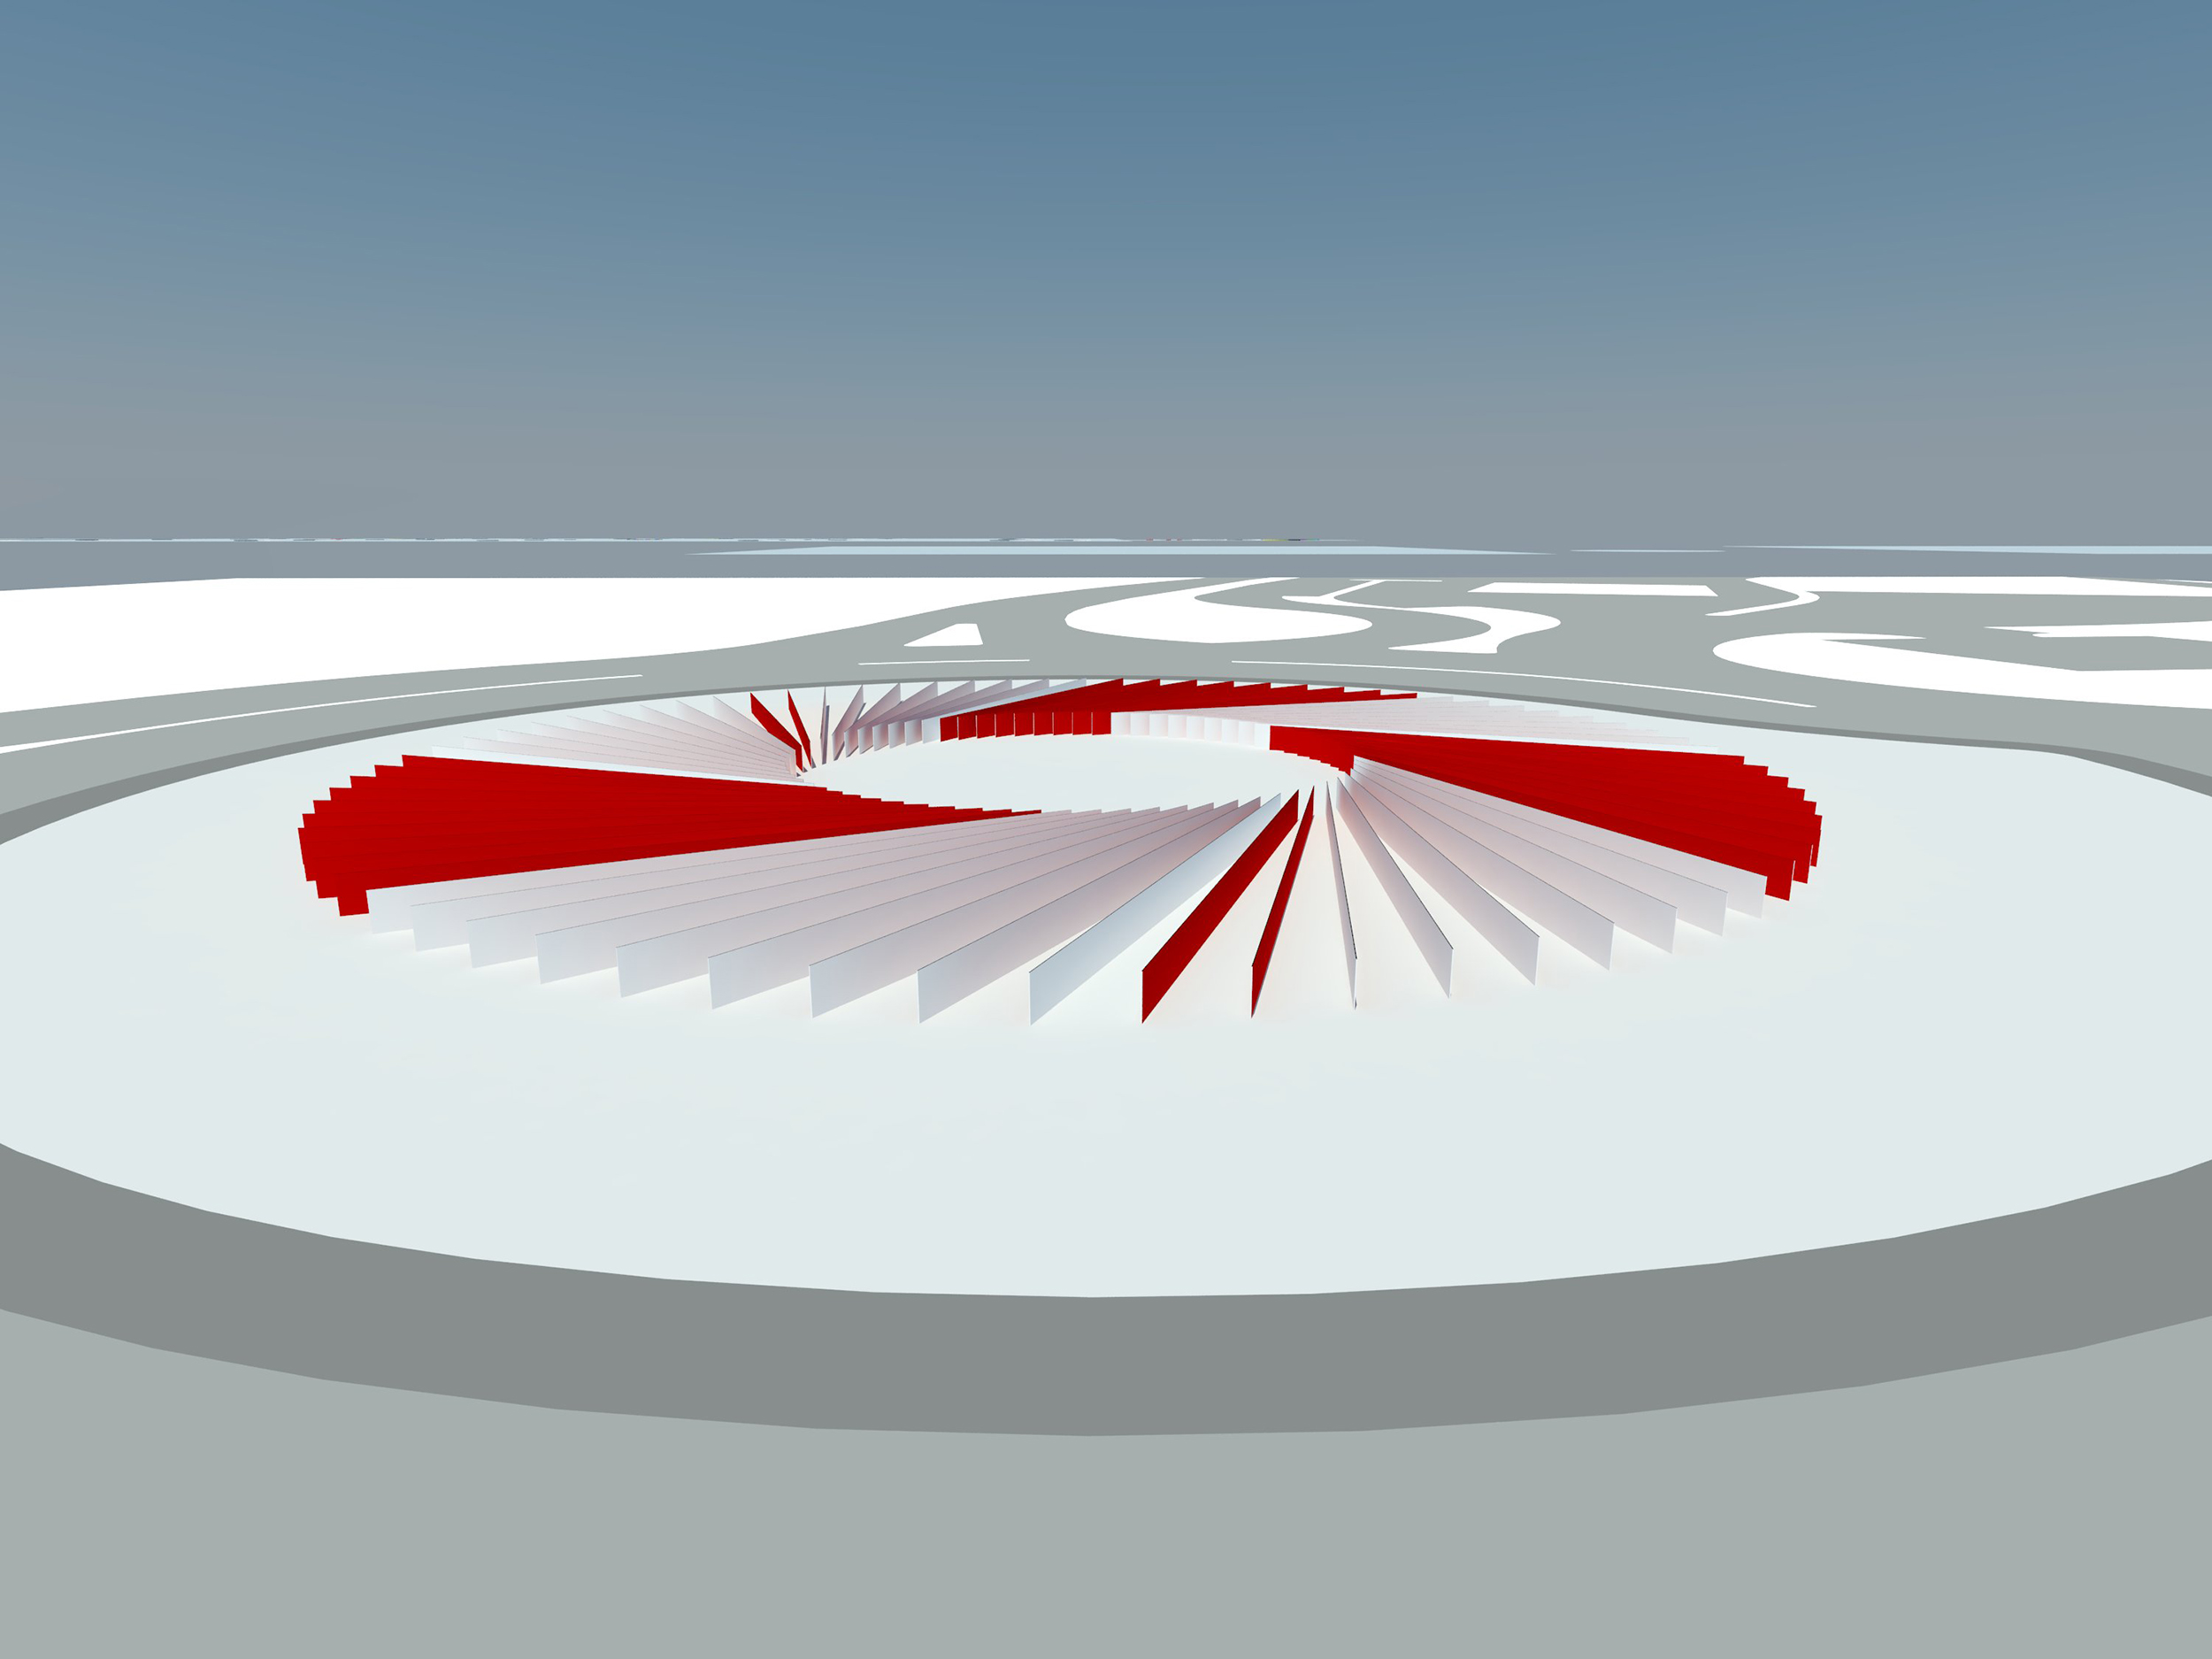 obvoznica ljubljana roundabout interactivno krožišče